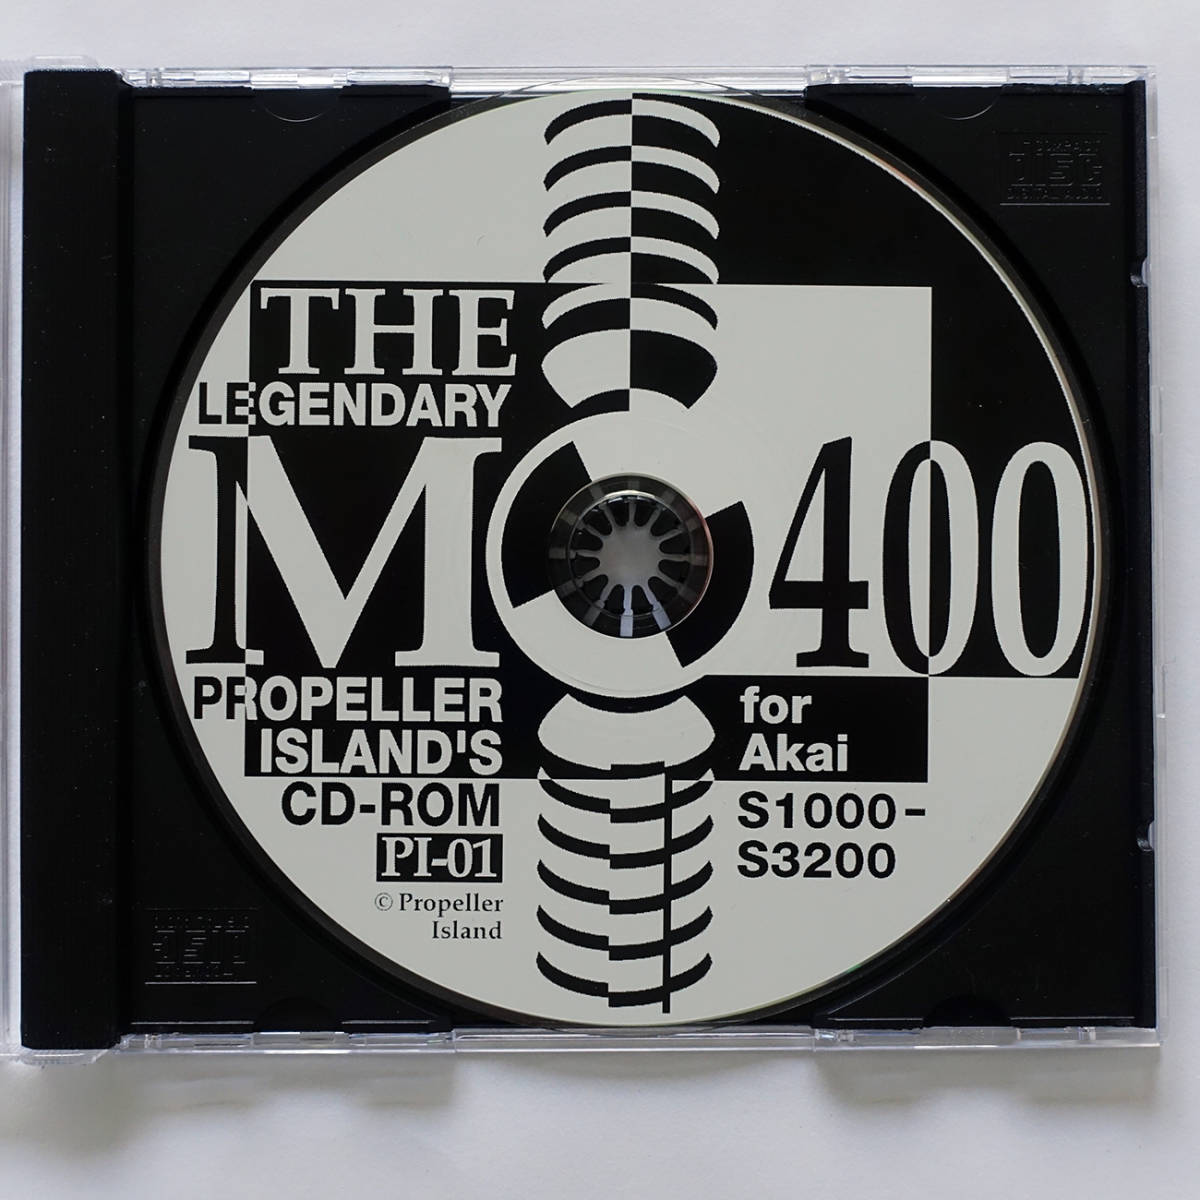 メロトロンM400 サンプリング CD-ROM ★ PROPELLER ISLAND'S M400 Sample-CD-ROM for Akai S1000 toS3200 _画像2